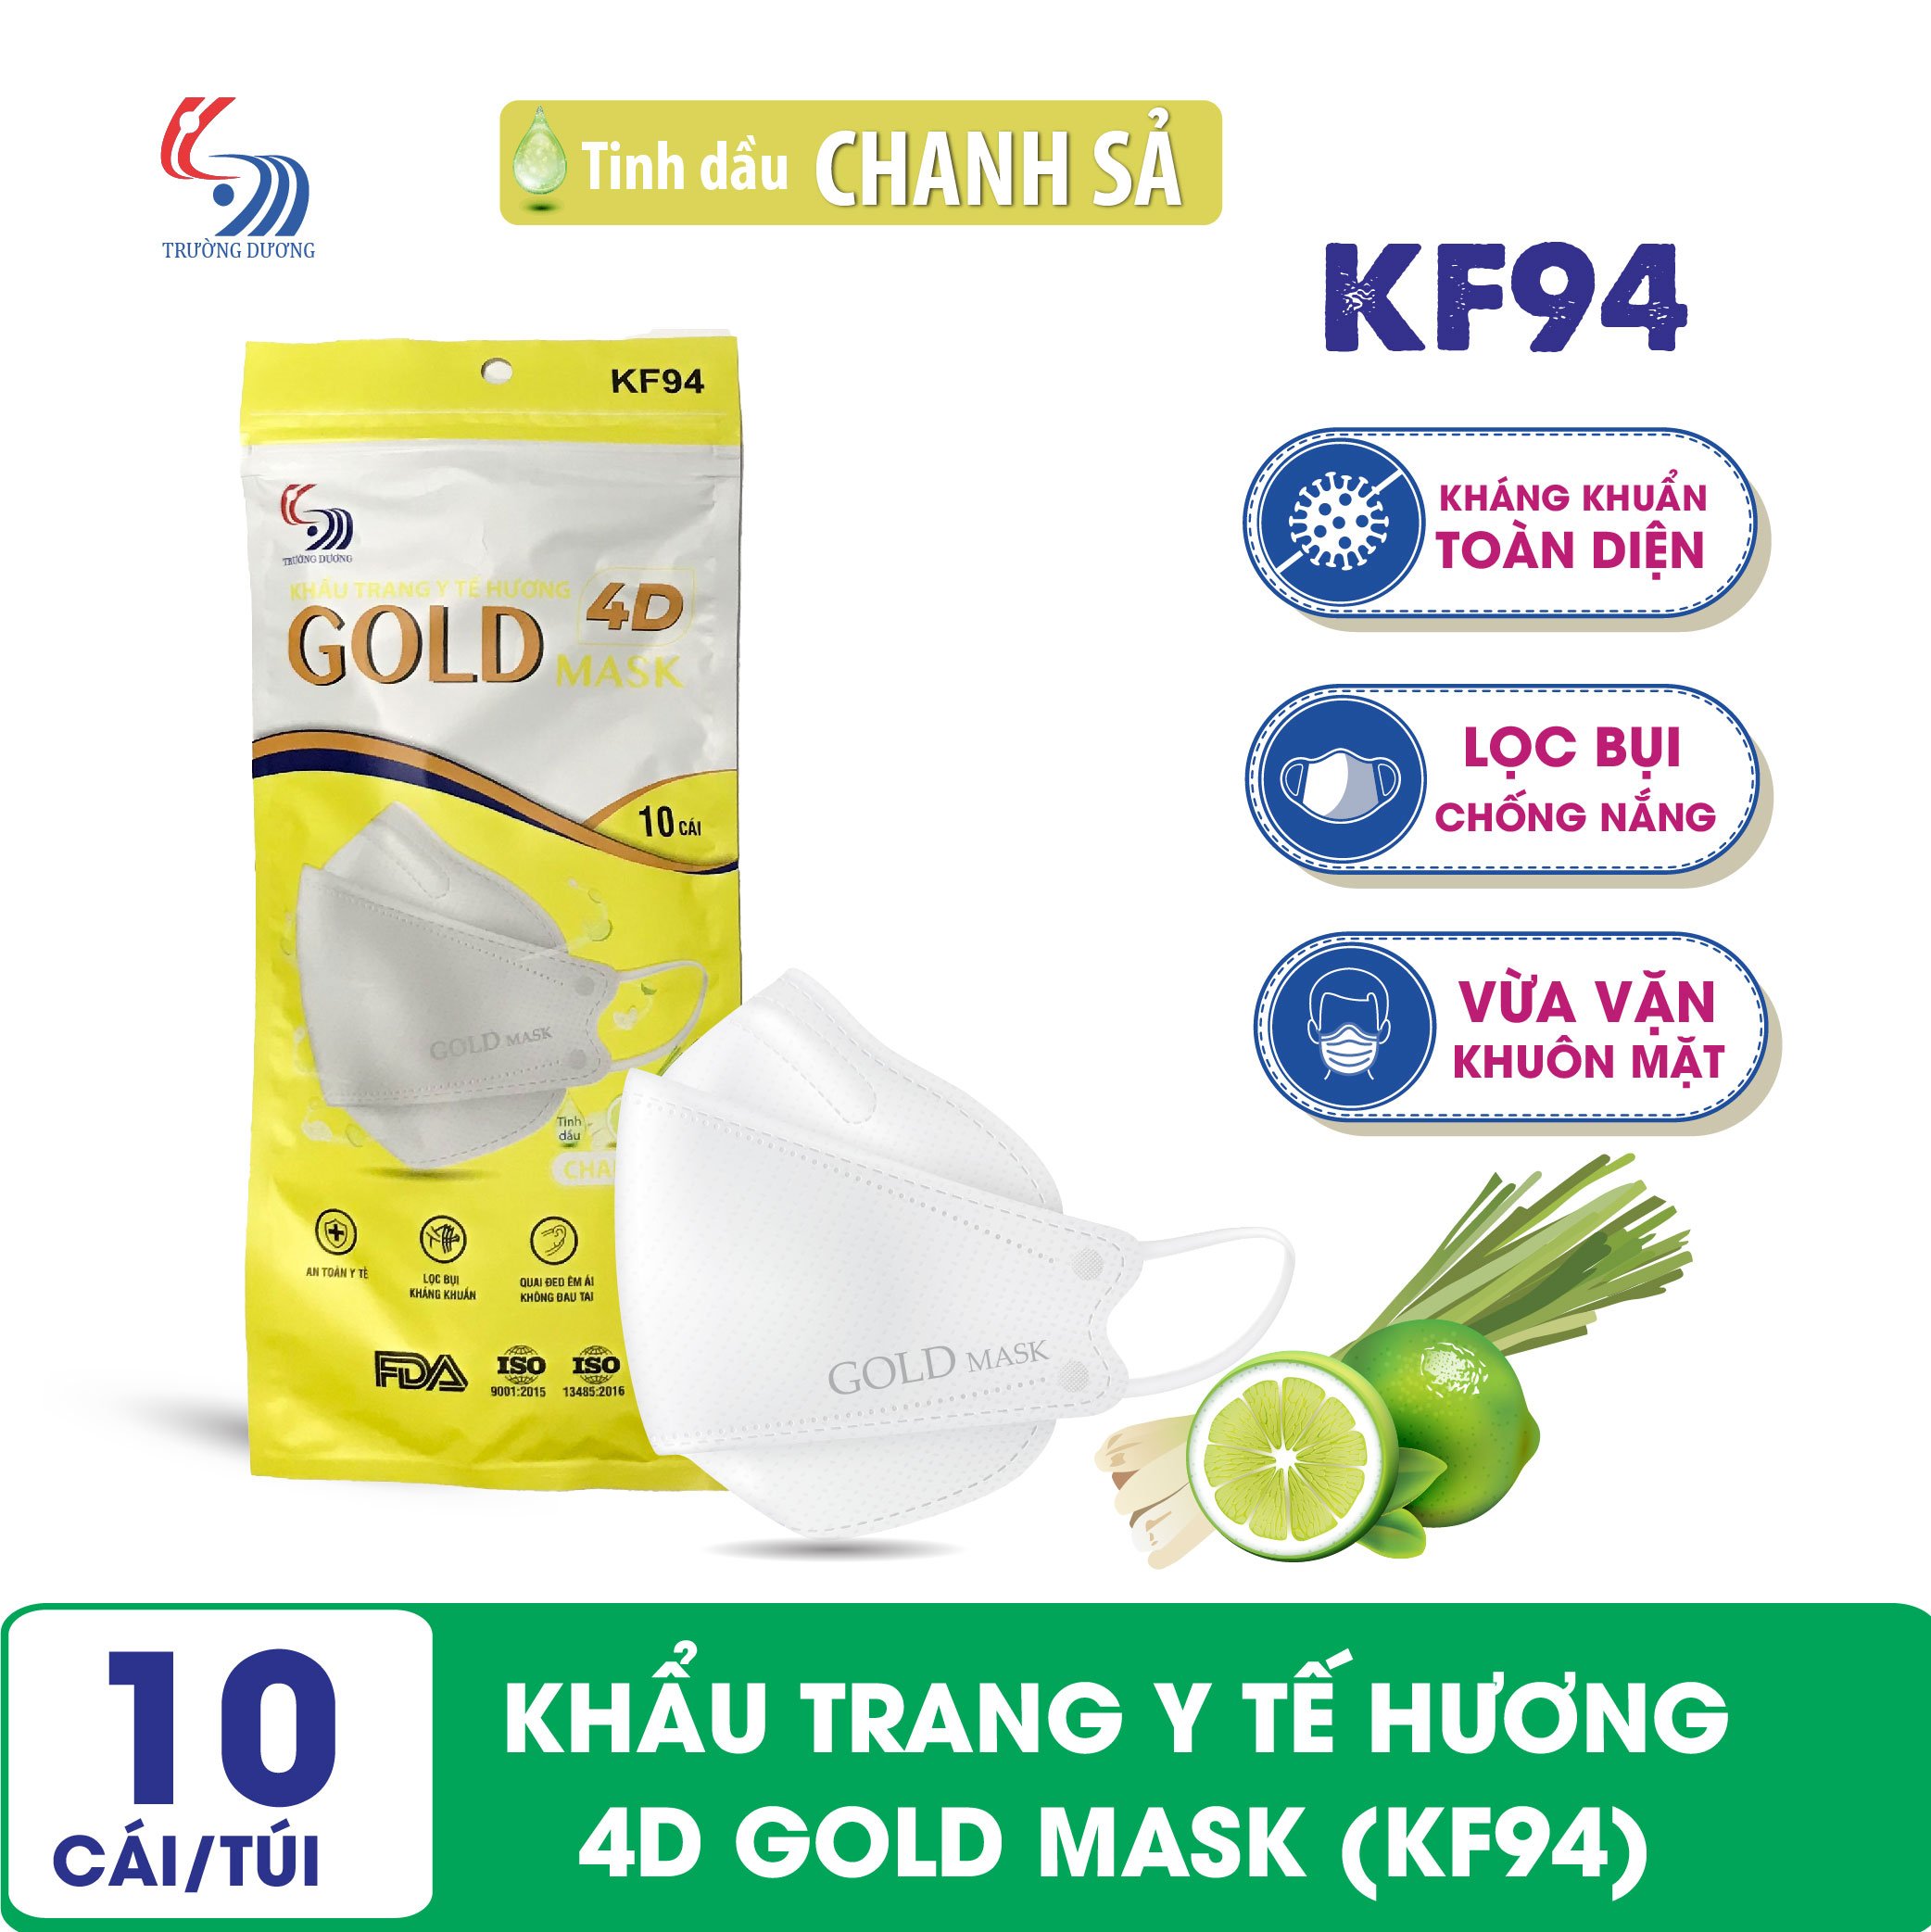 Khẩu trang y tế Hương tinh dầu Chanh Sả 4D Gold Mask (KF94) - Túi 10 chiếc